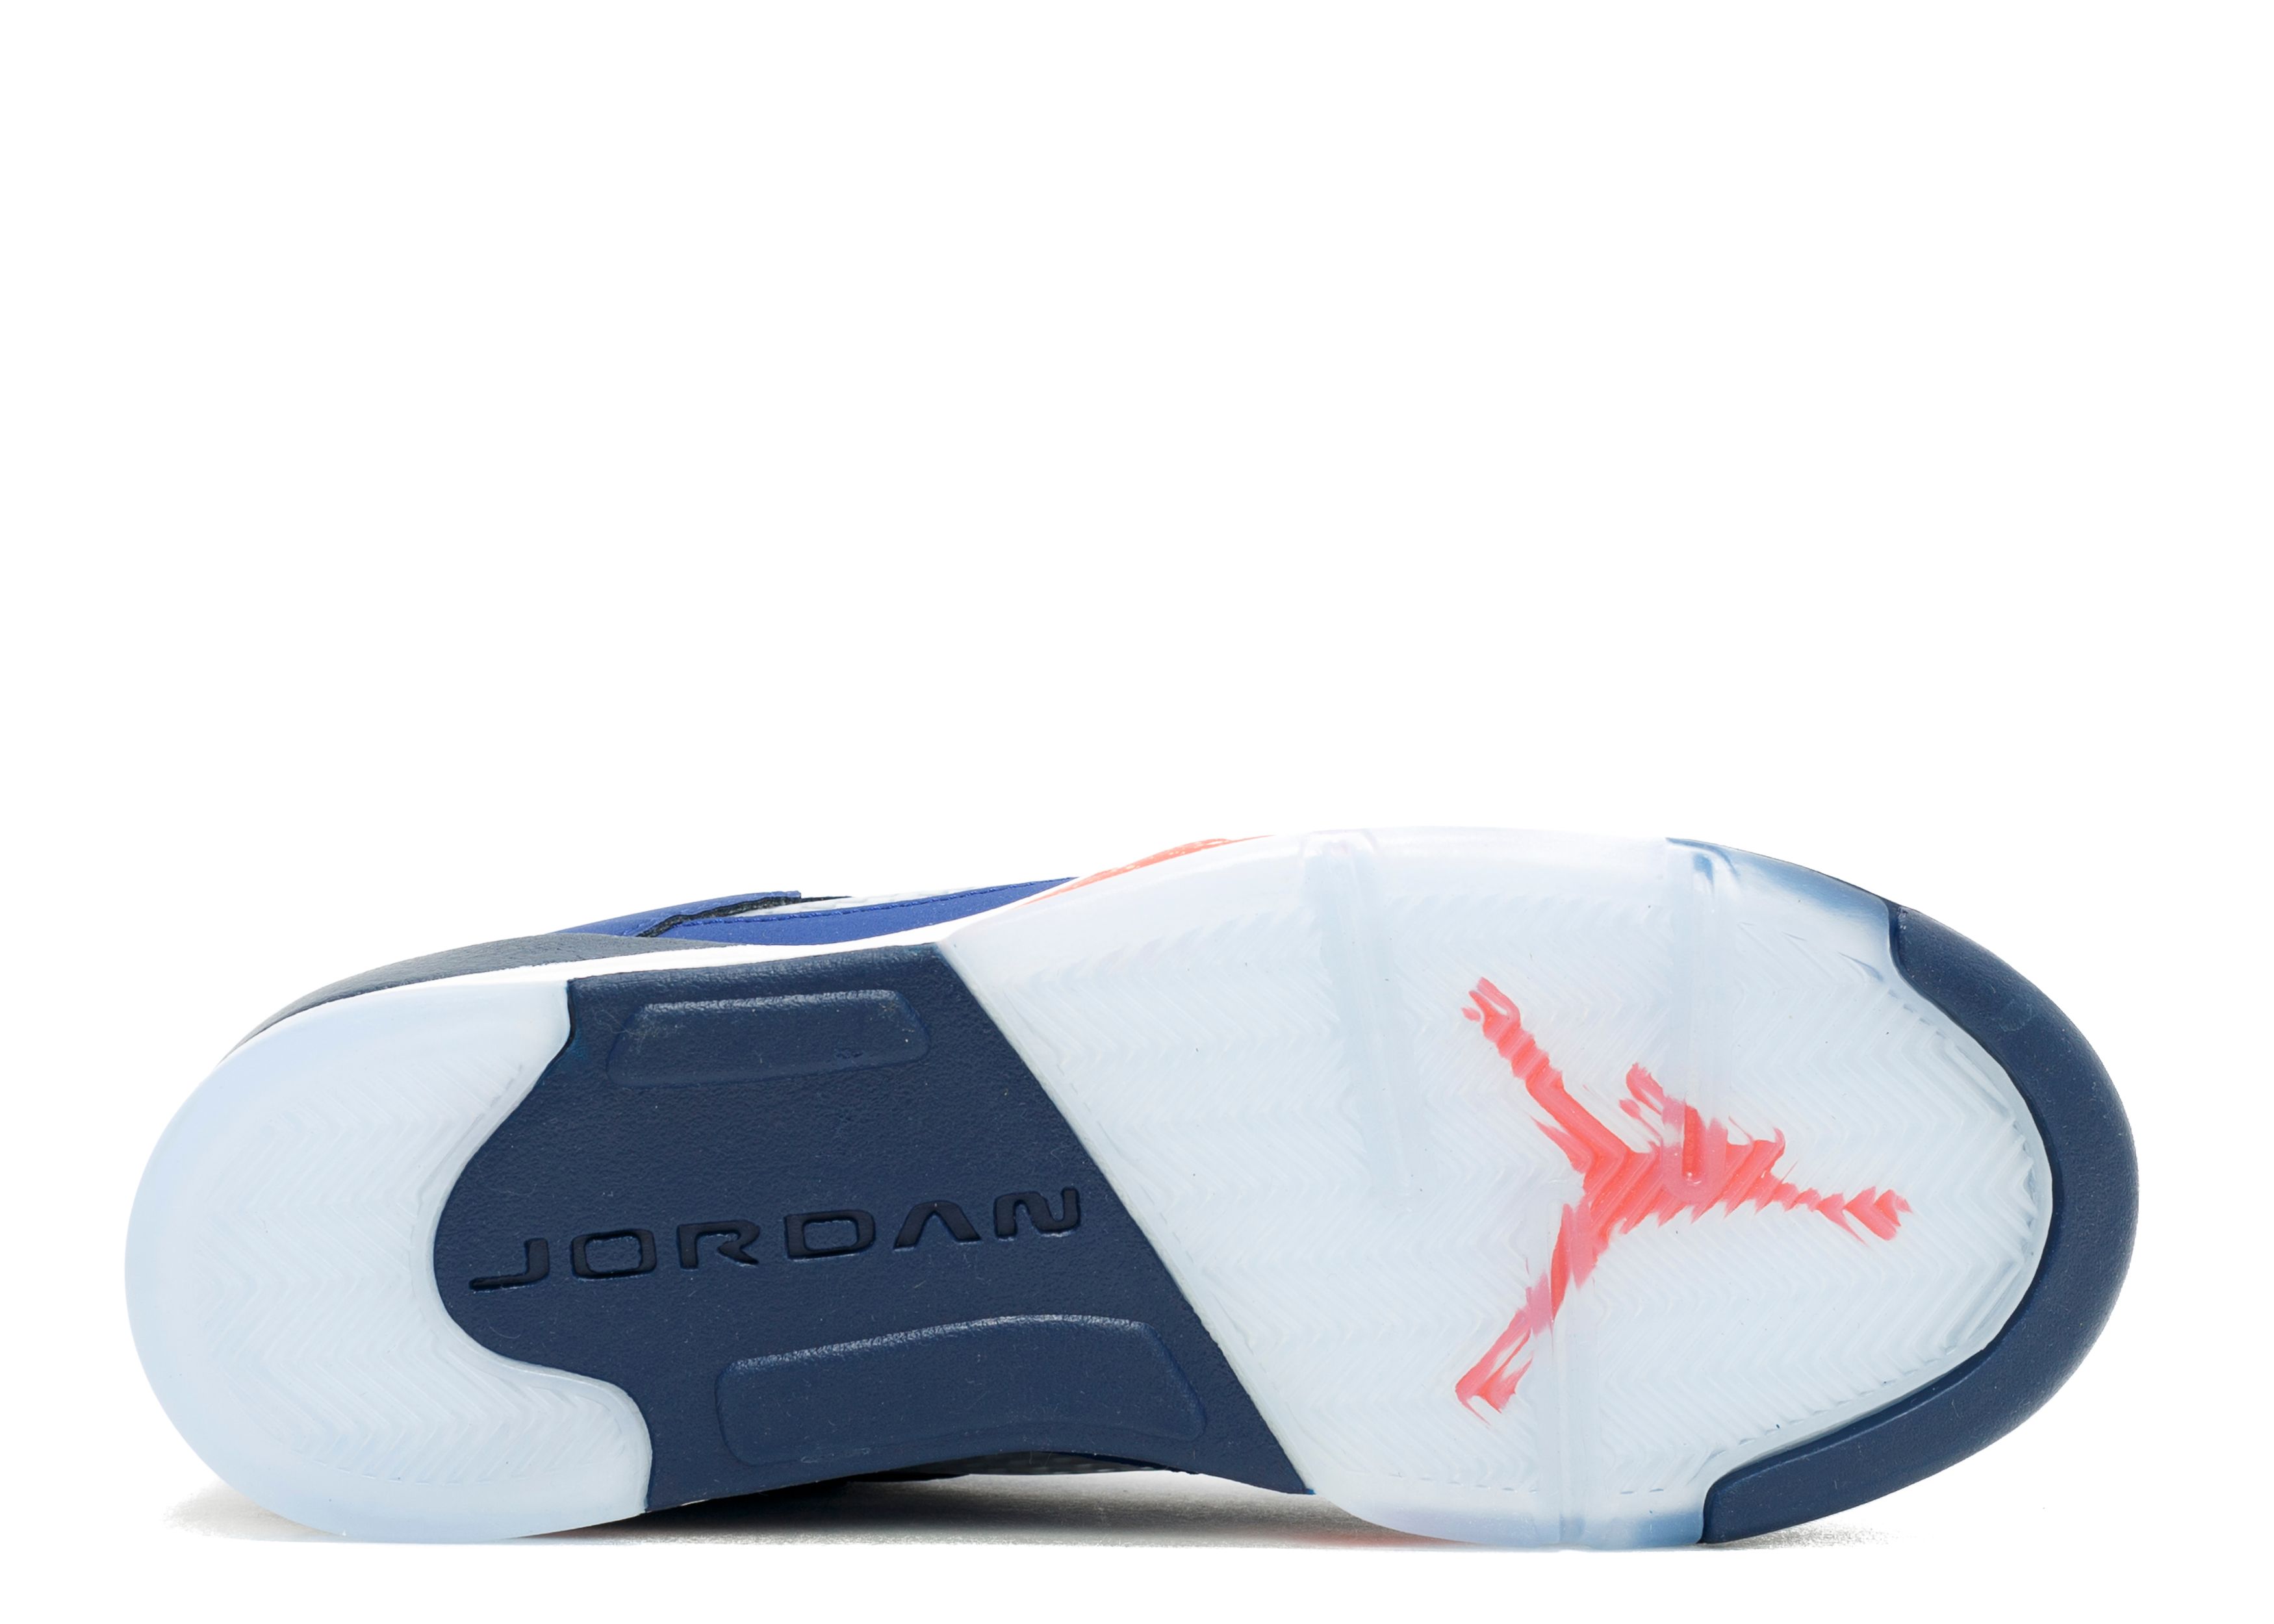 Air Jordan 5 Retro Low GS ‘Knicks’